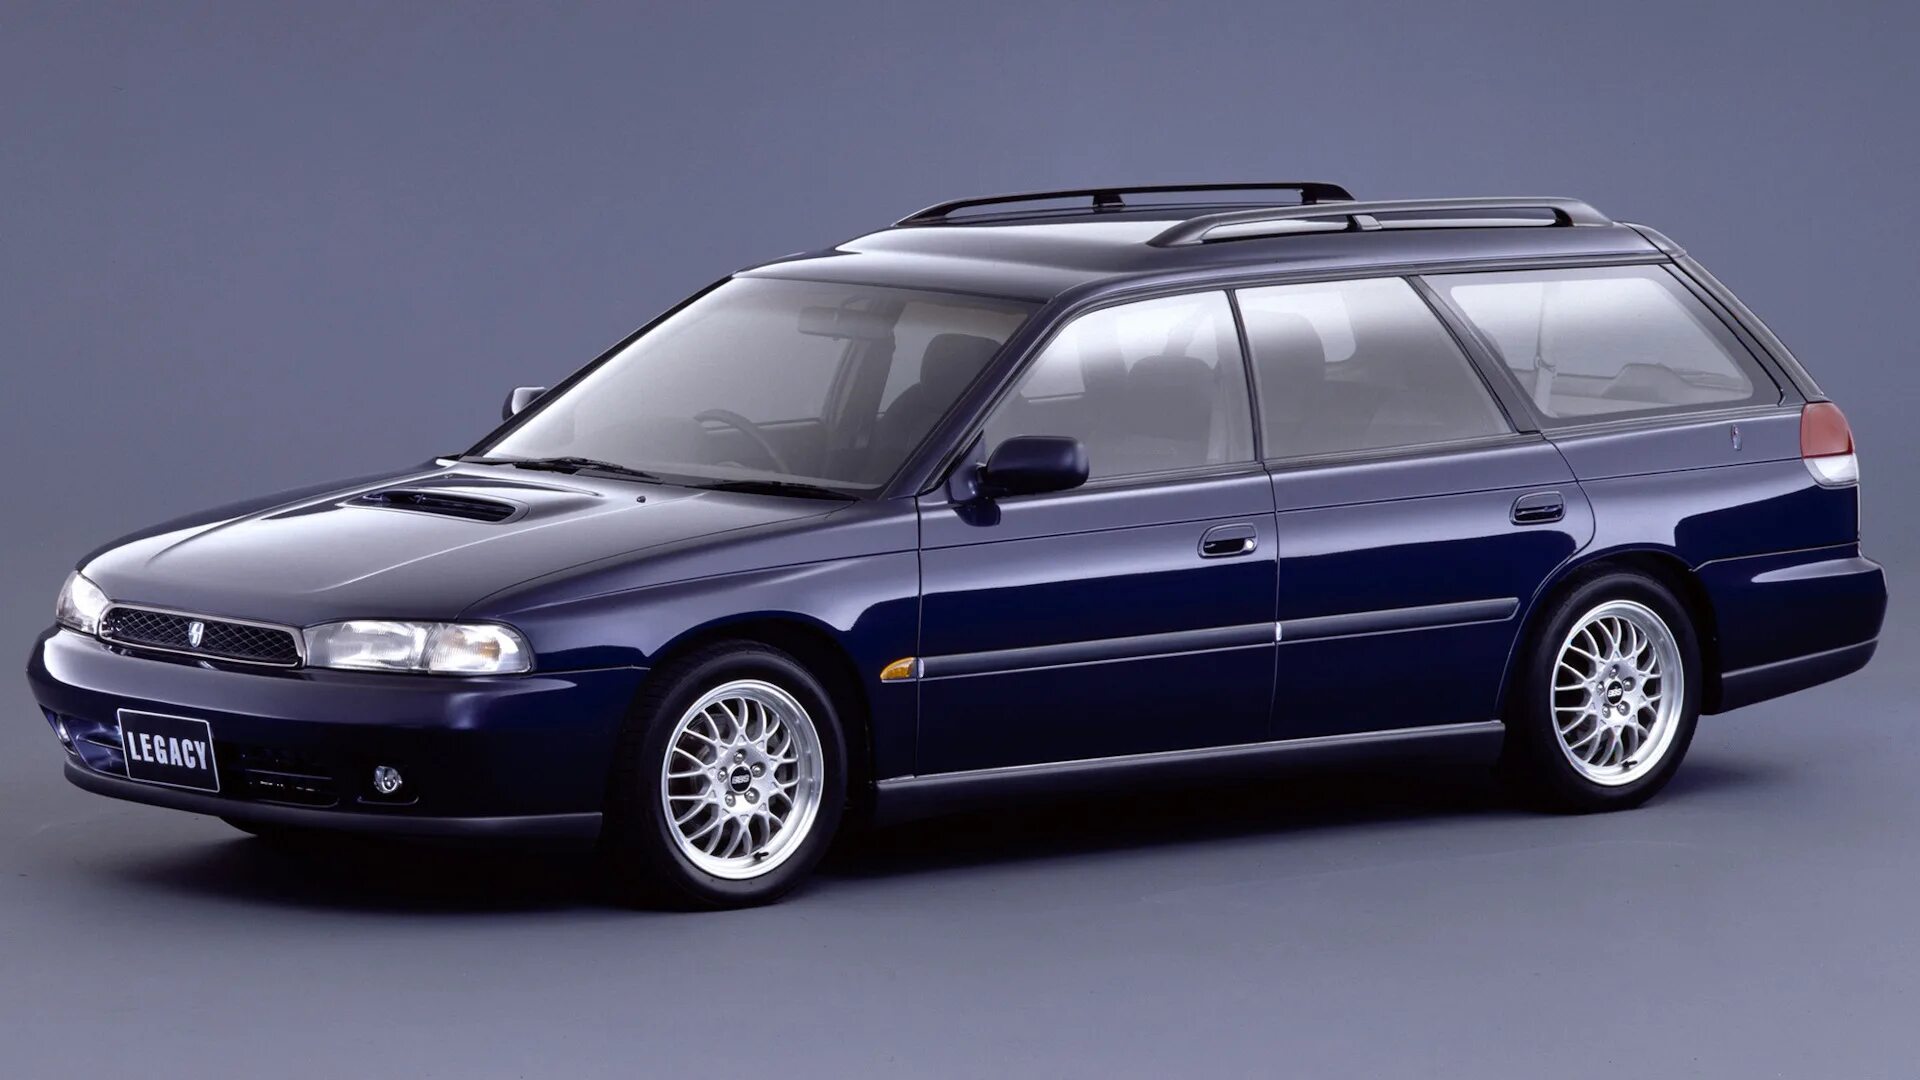 Subaru legacy 2. Subaru Legacy 1994 универсал. Субару Легаси 1994 универсал. 1998 Subaru Legacy Wagon. Subaru Legacy 2 универсал.